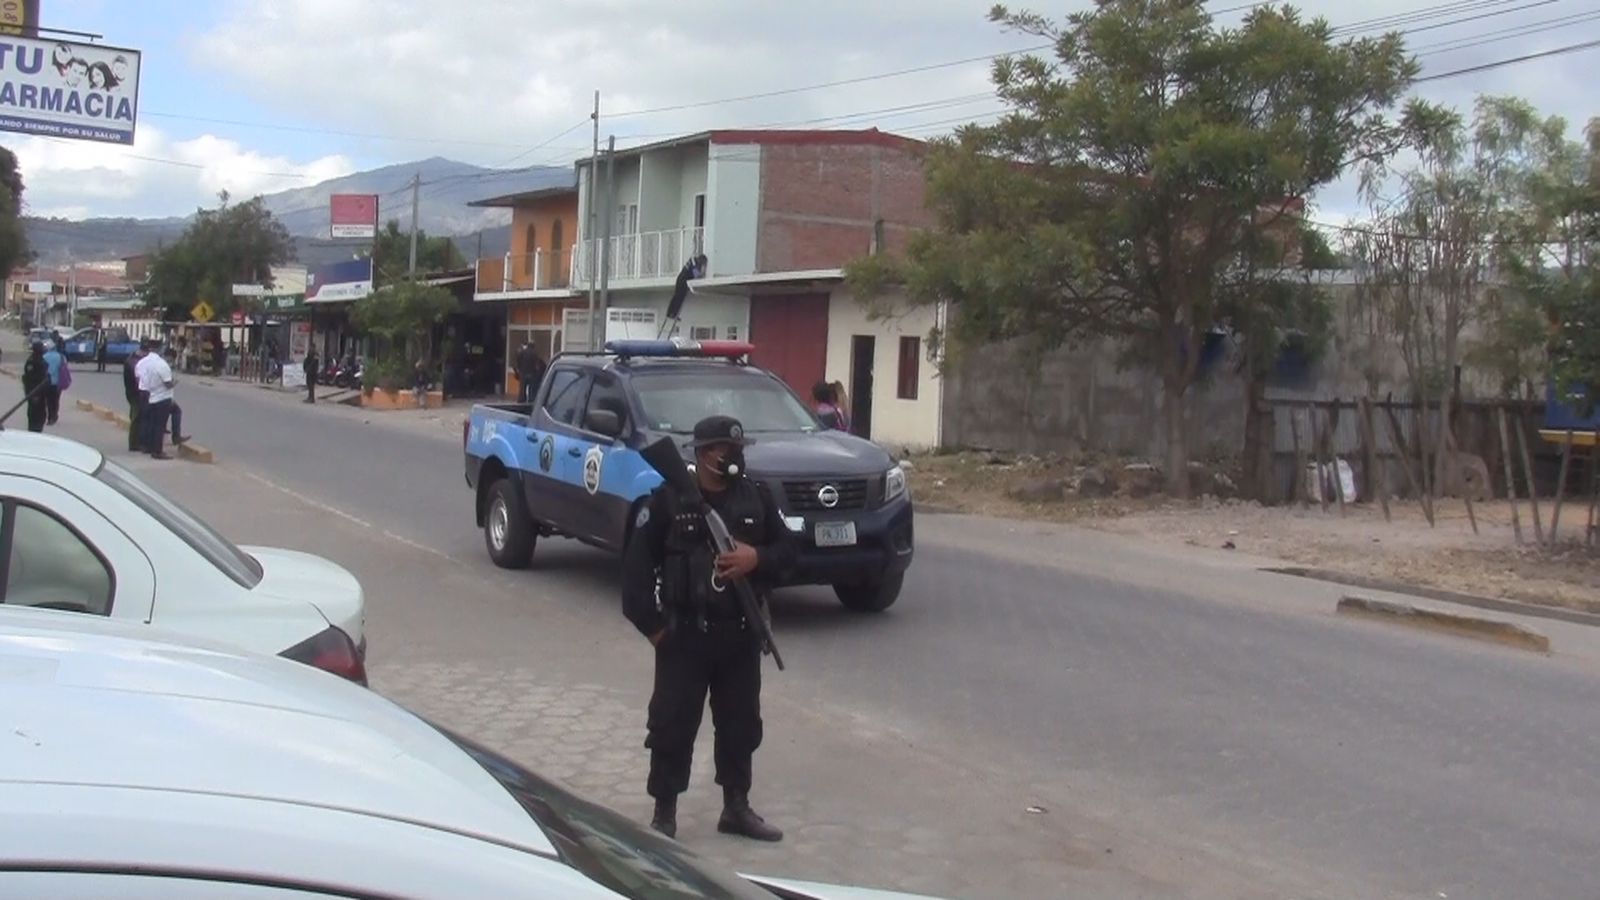 La policía llegó a la casa de habitación en disputa donde se dio la balacera esta mañana en el barrio Dios Proveerá, en Estelí.